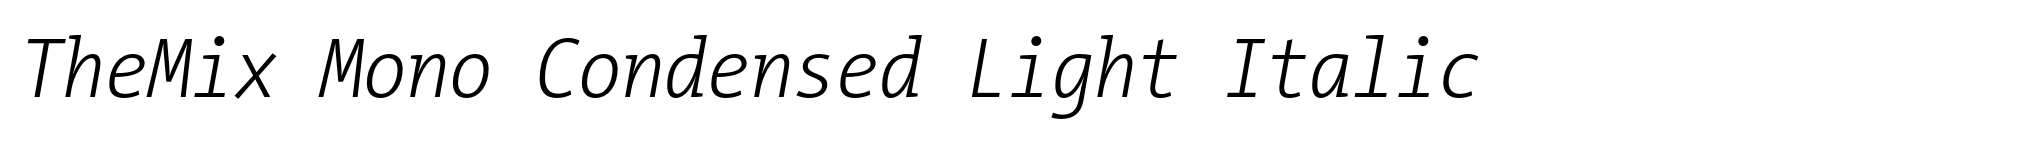 TheMix Mono Condensed Light Italic image